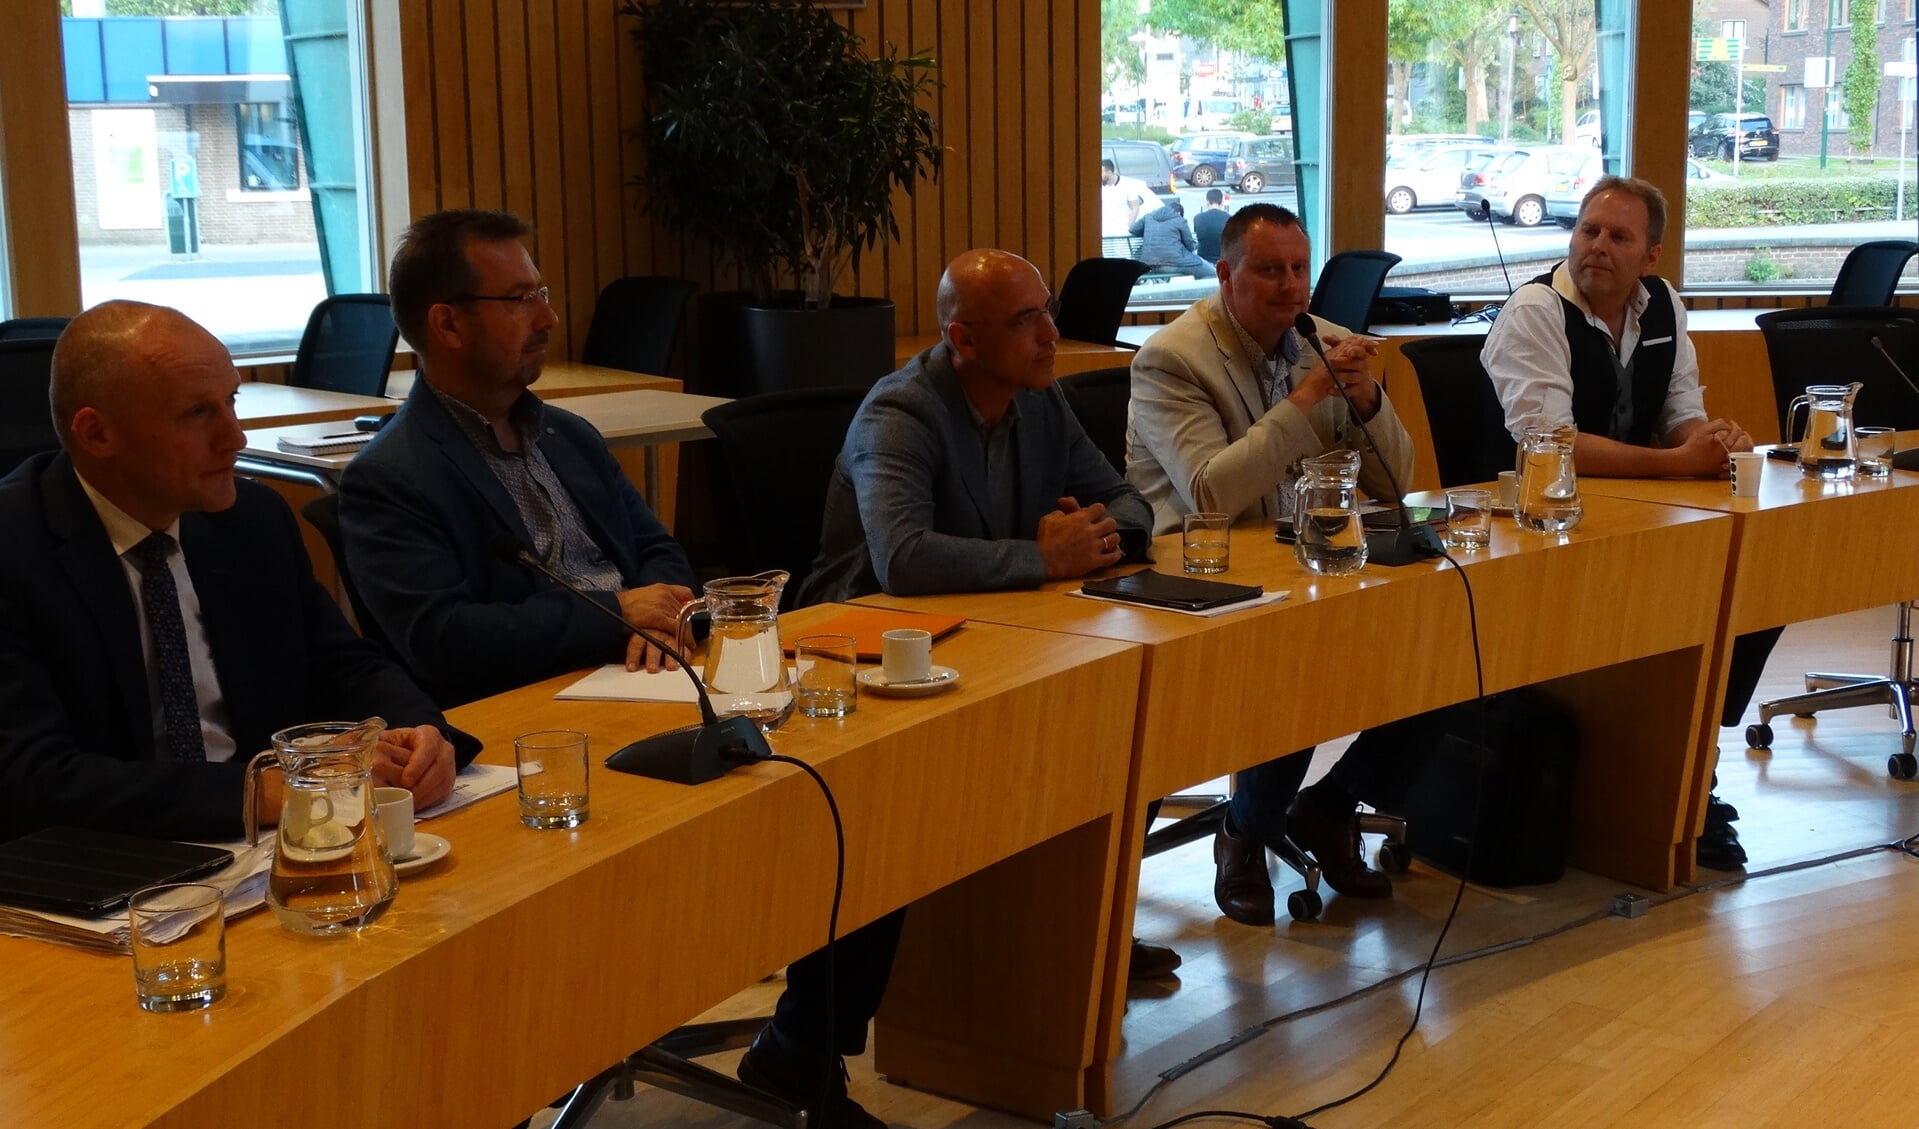  Onderhandelaars van PCG, GroenLinks en VVD tijdens de spiegelbijeenkomst over het coalitieakkoord